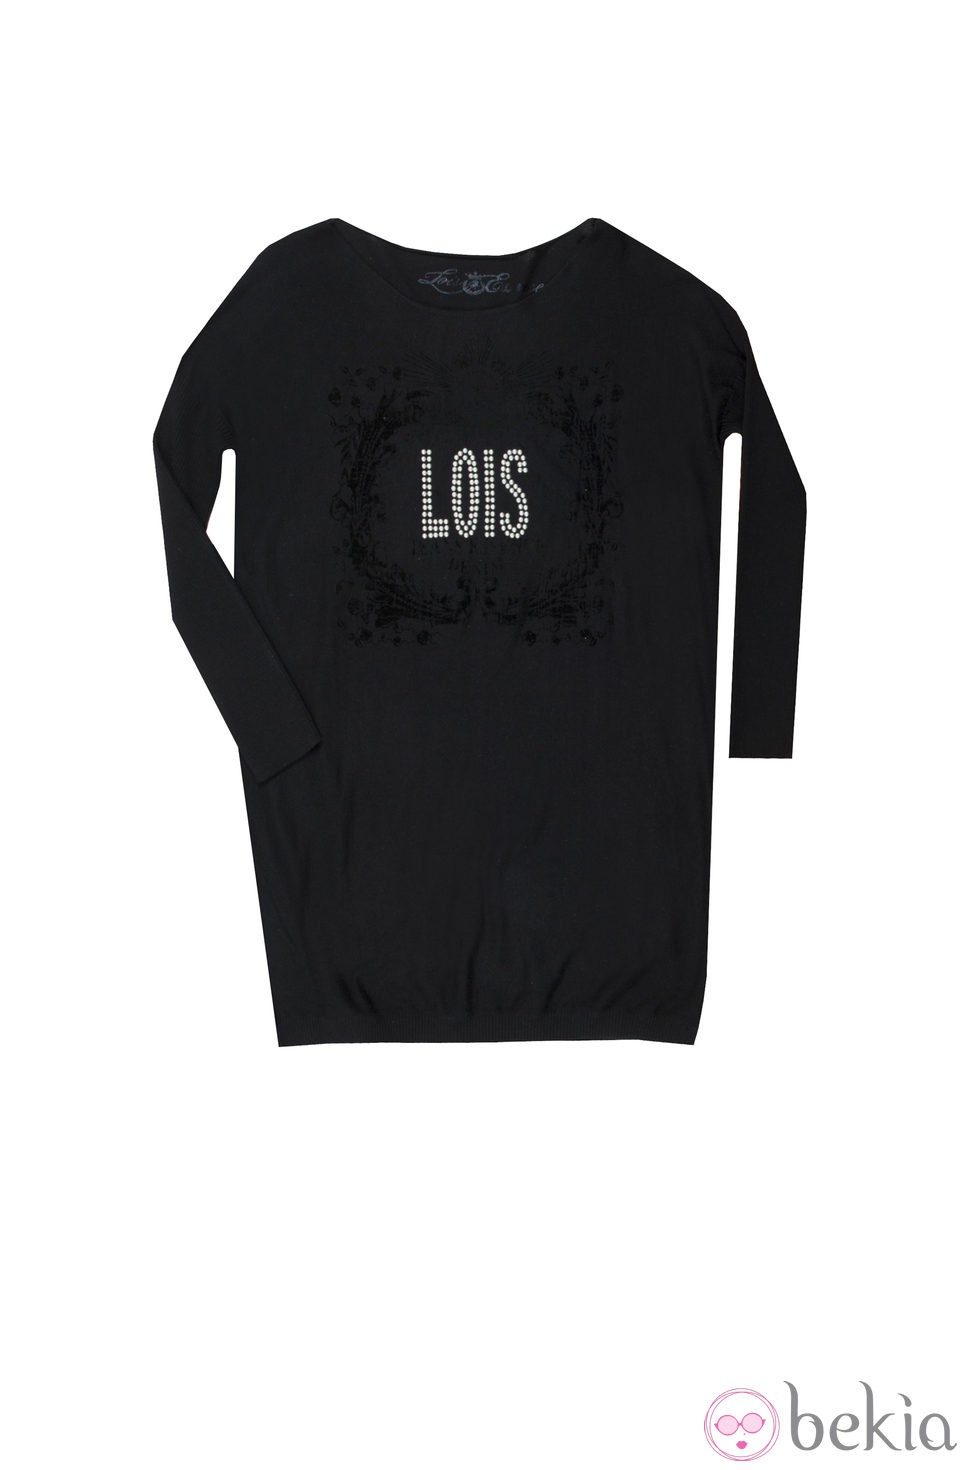 Camiseta oversized de la colección otoño/invierno 2013 de Lois